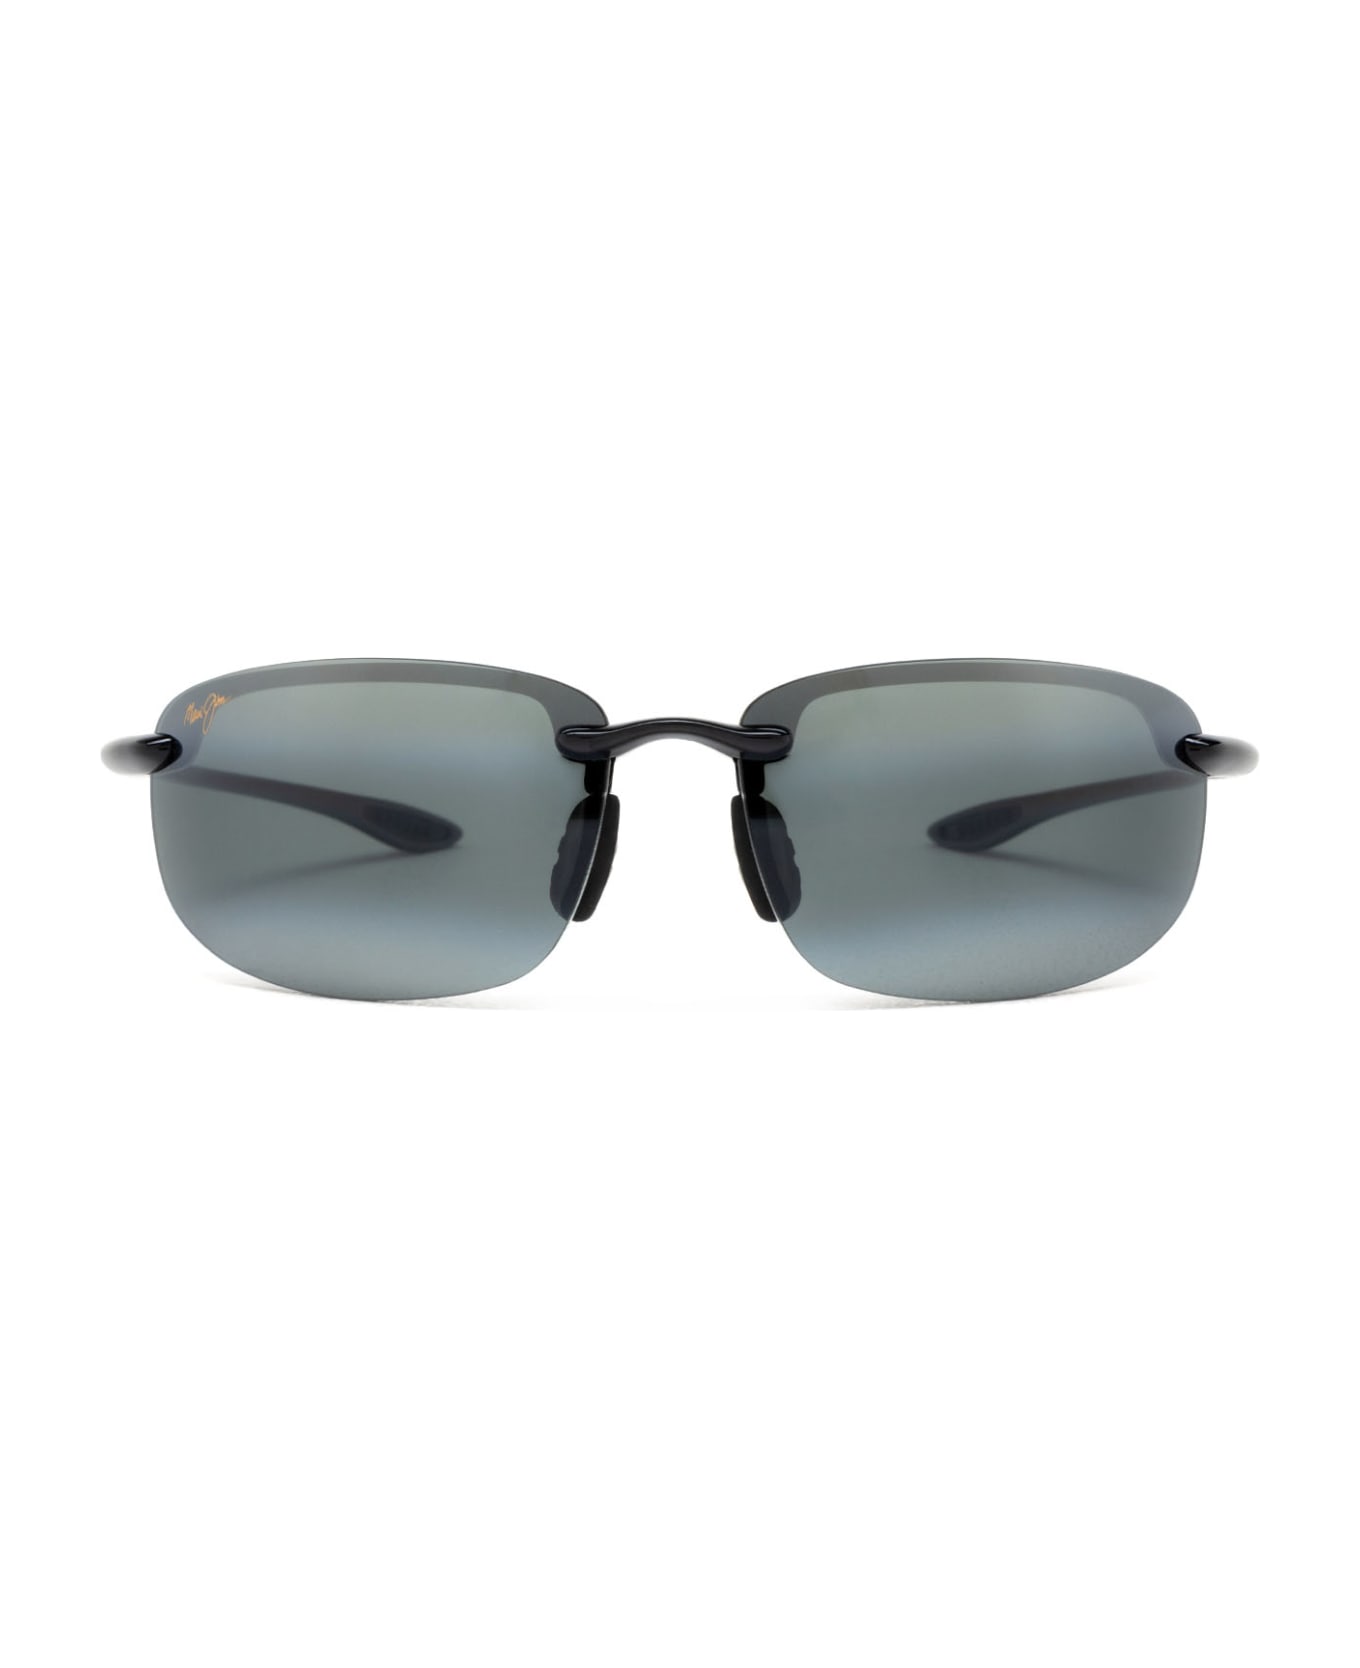 Maui Jim Mj0407s Black Sunglasses - Black